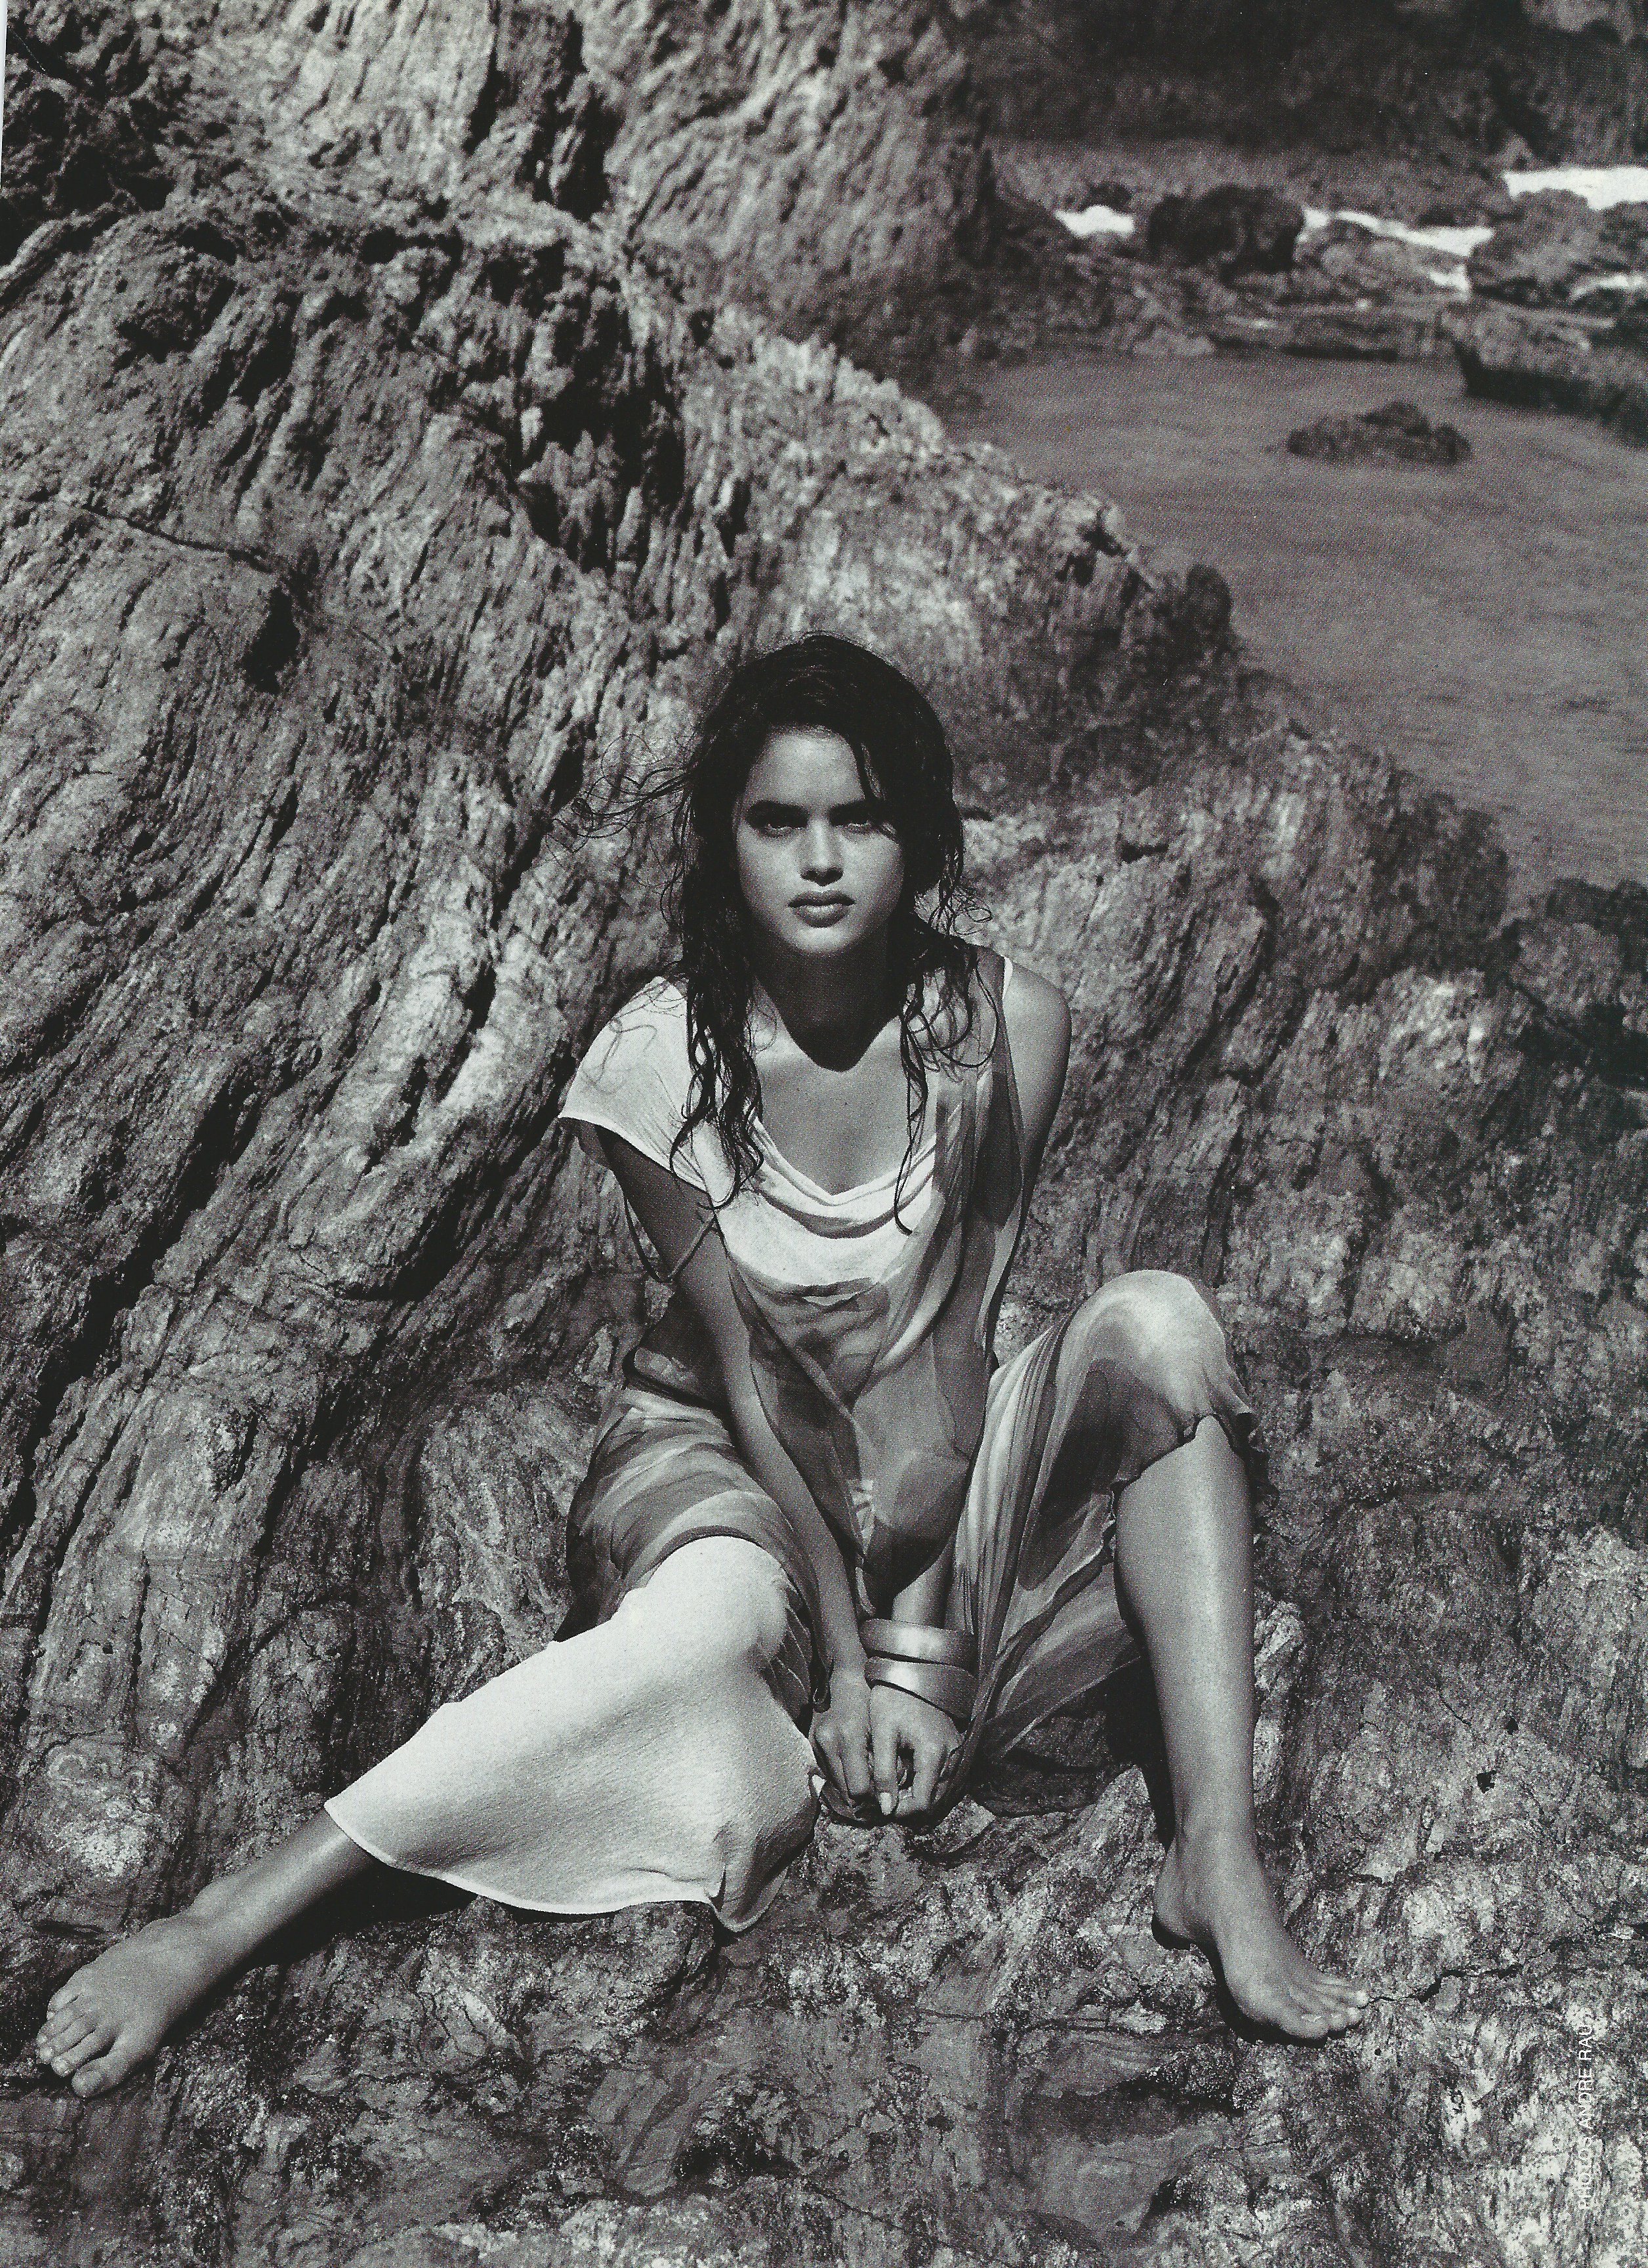 Amy Elmore- 1988 Seventeen Magazine Cover Girl Winner